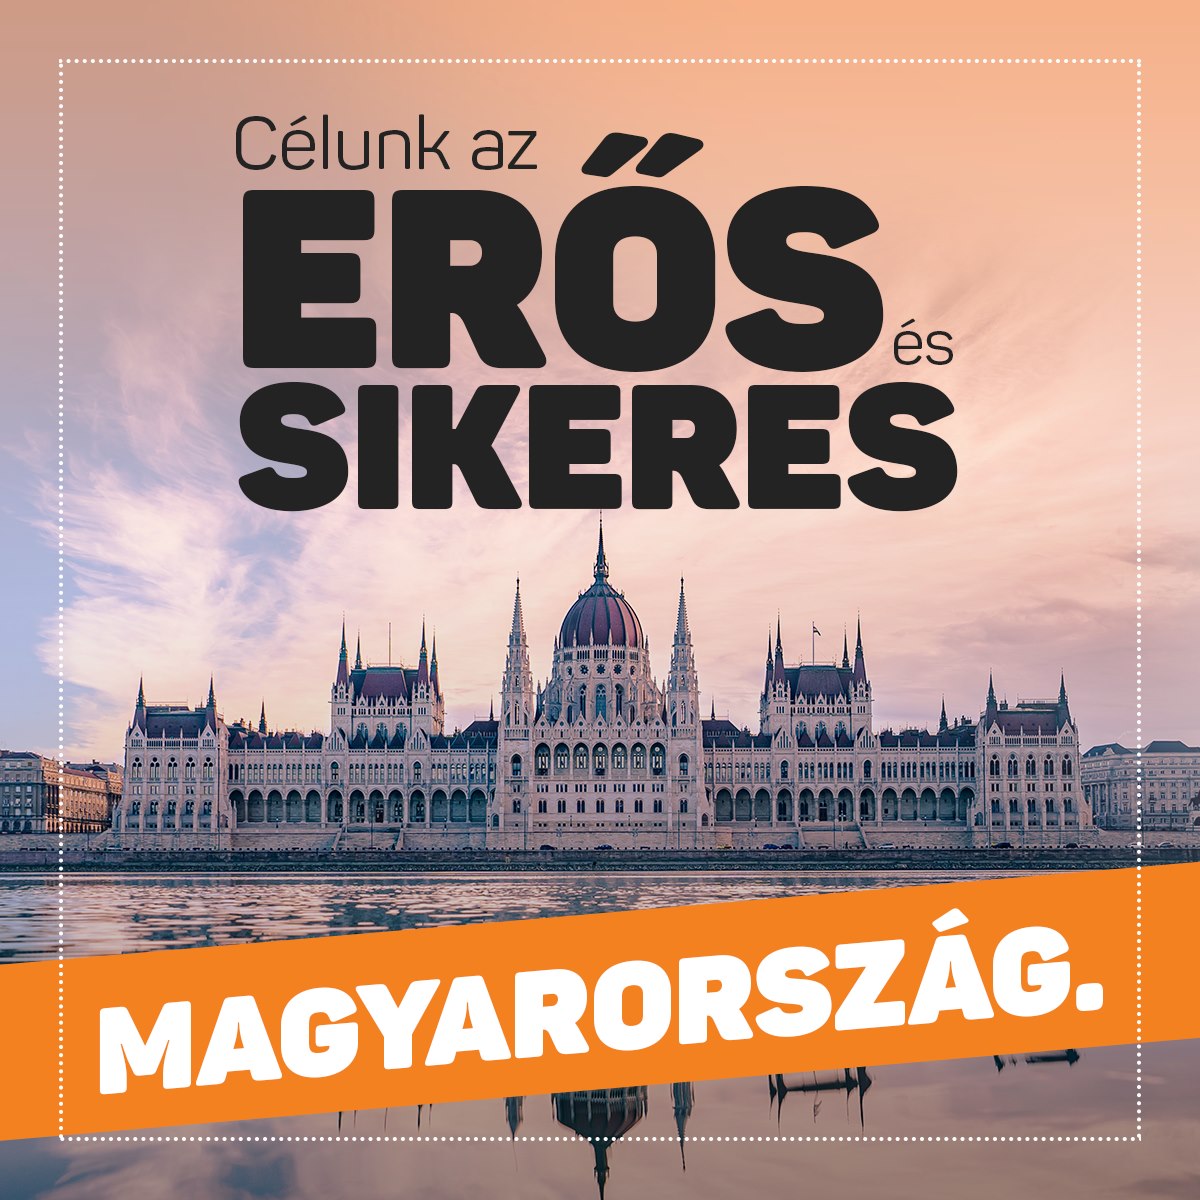 Célunk az erős és sikeres Magyarország.